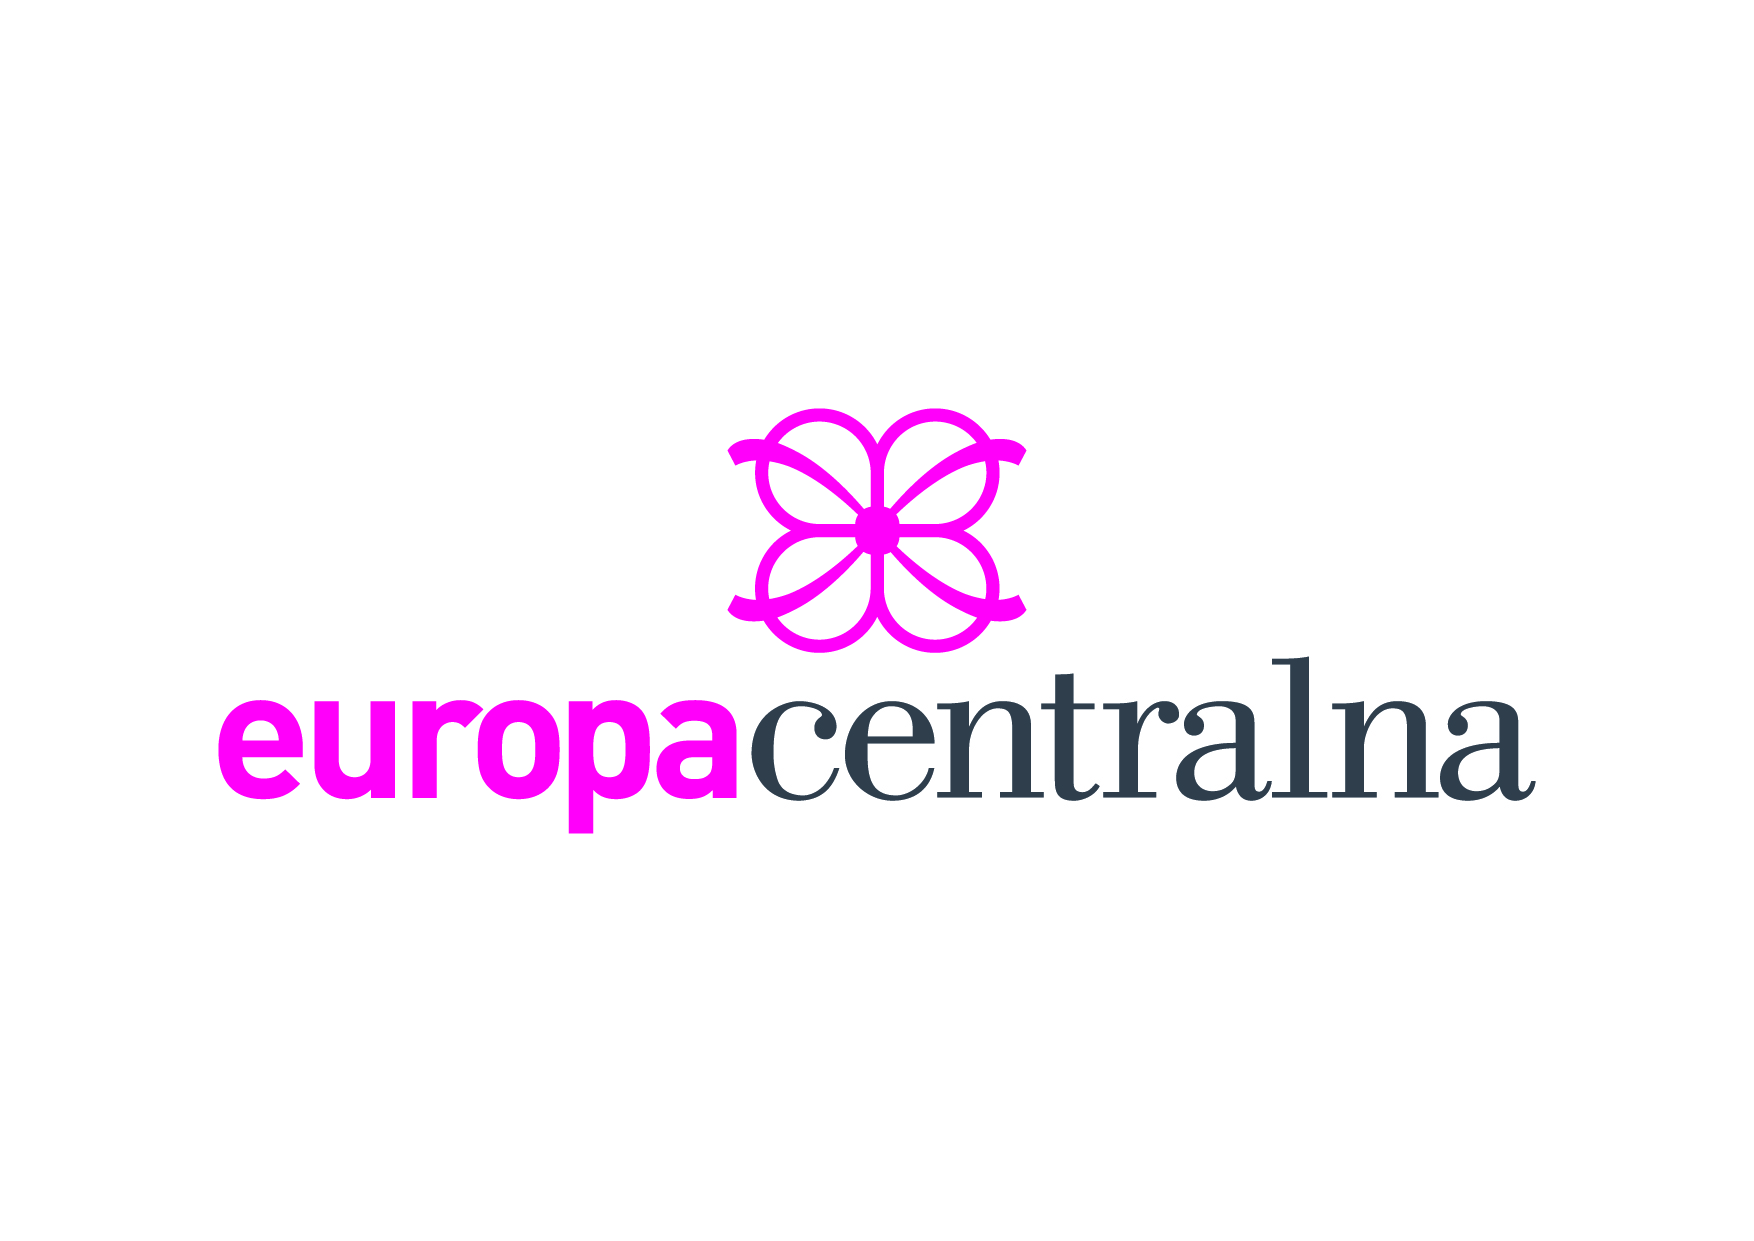 Europa Centralna logo